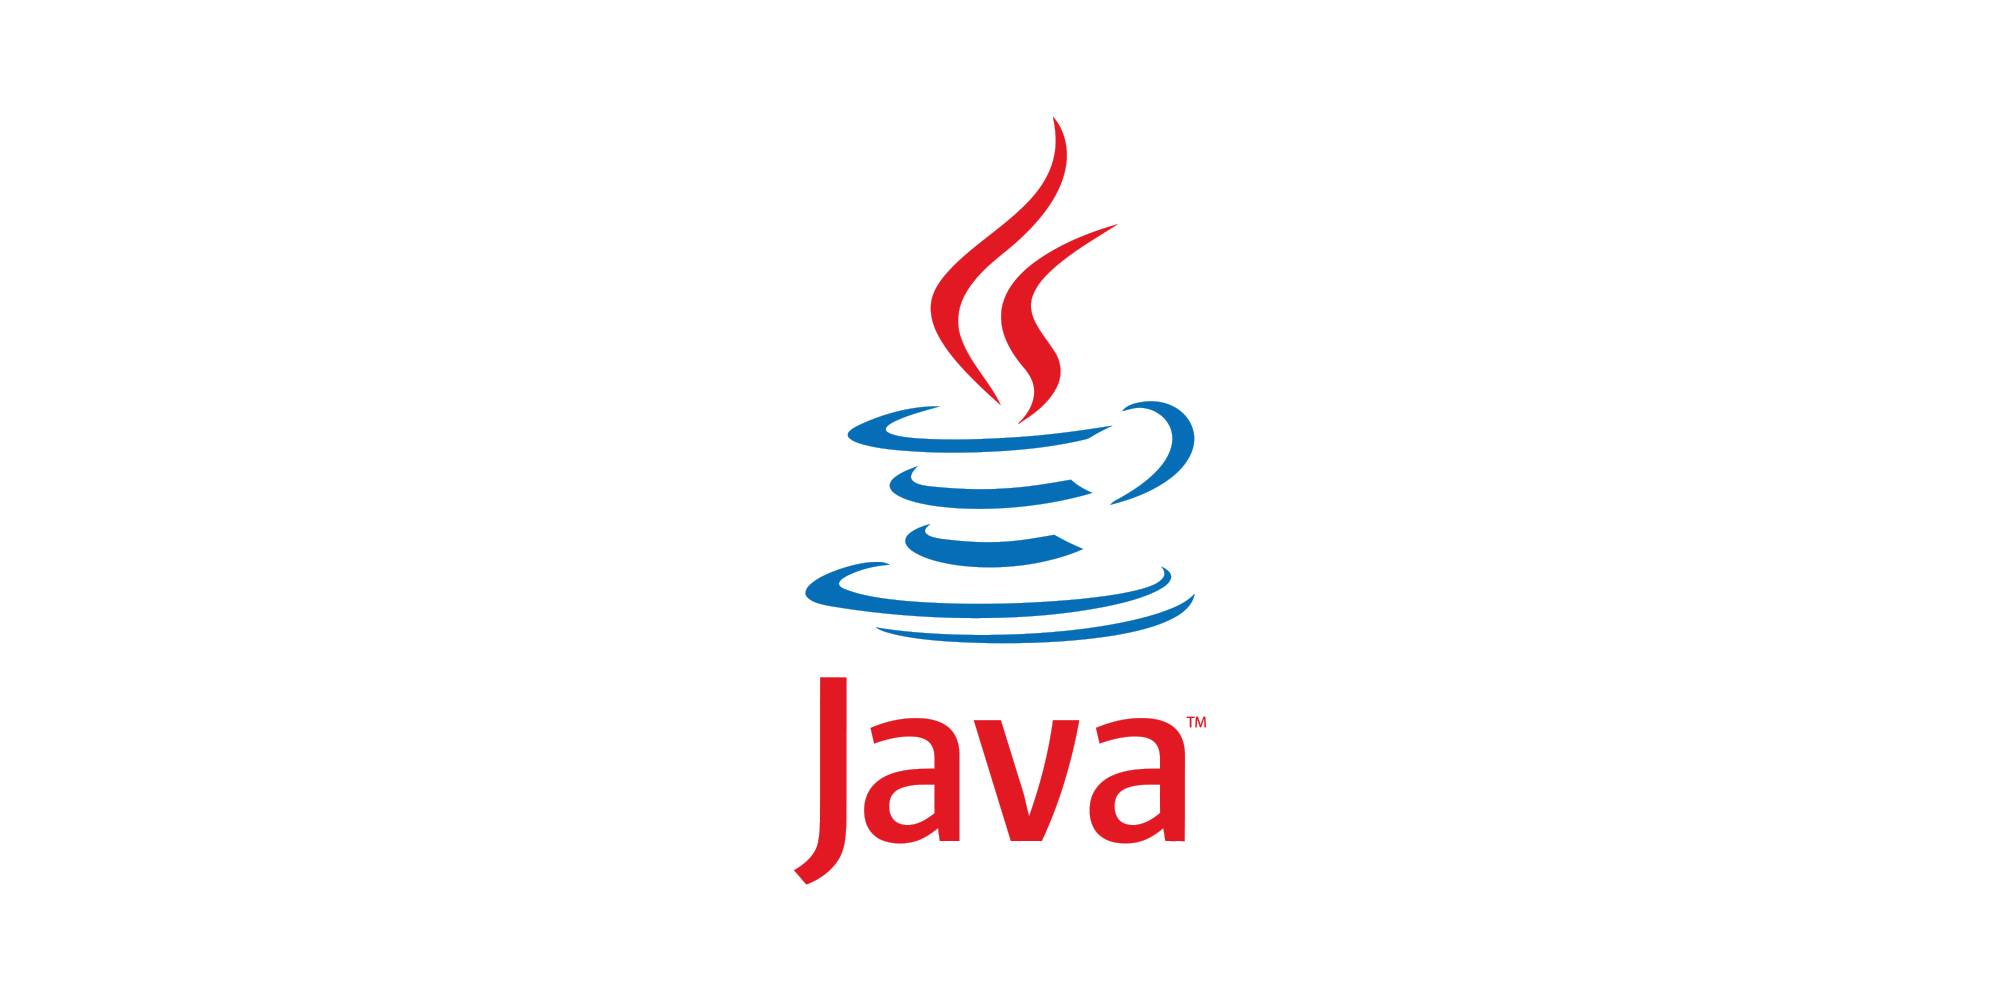 [교육자료] 0. 신입팀원 Java 교육 커리큘럼